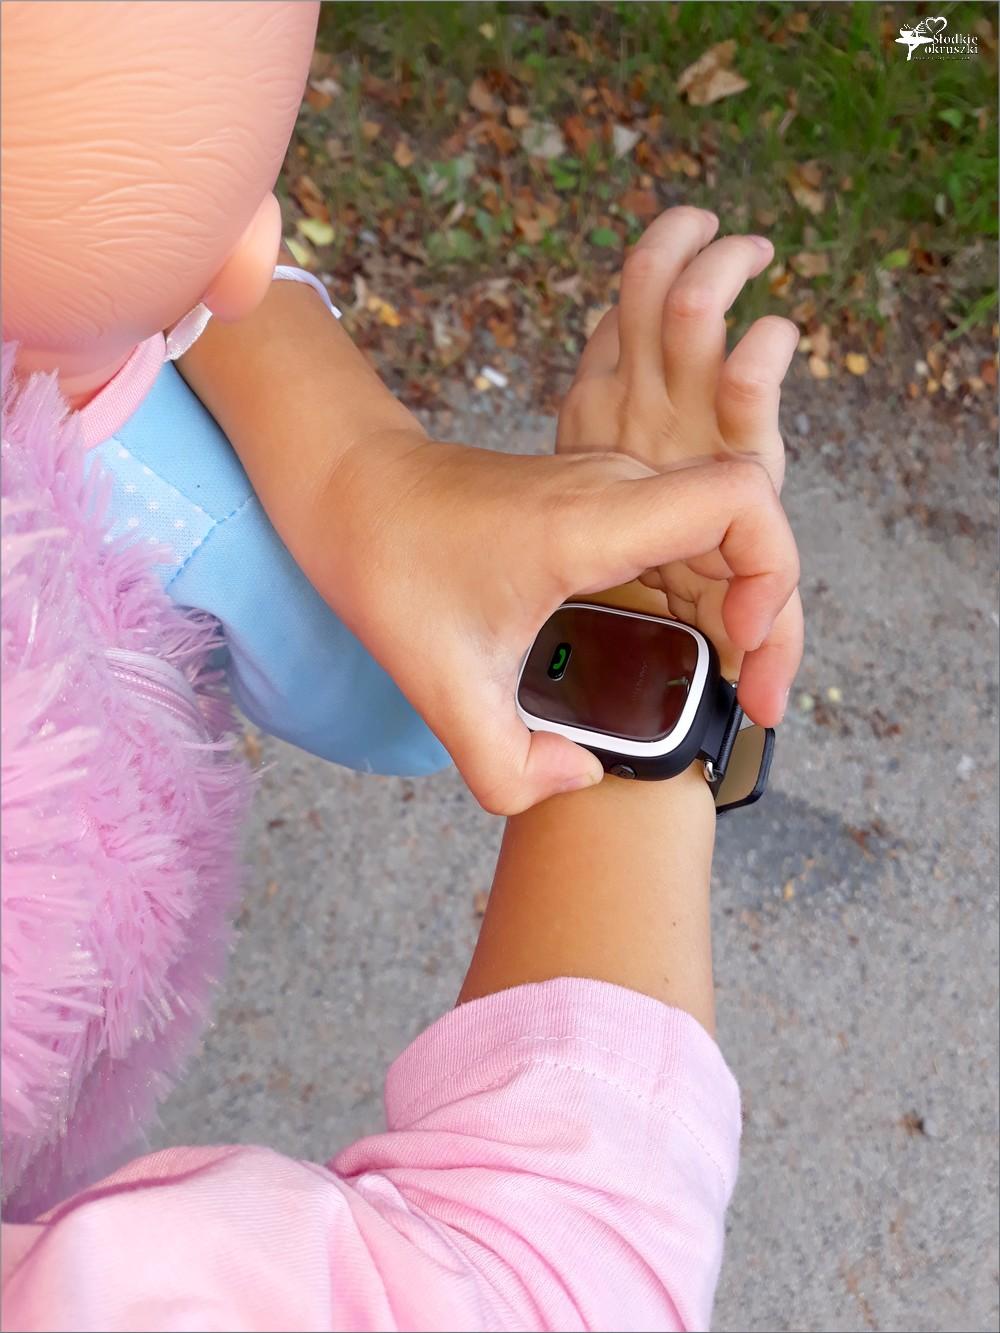 Bezpieczne dziecko, spokojna mama. Czy warto kupić zegarek GPS dla dziecka? | Słodkie okruszki